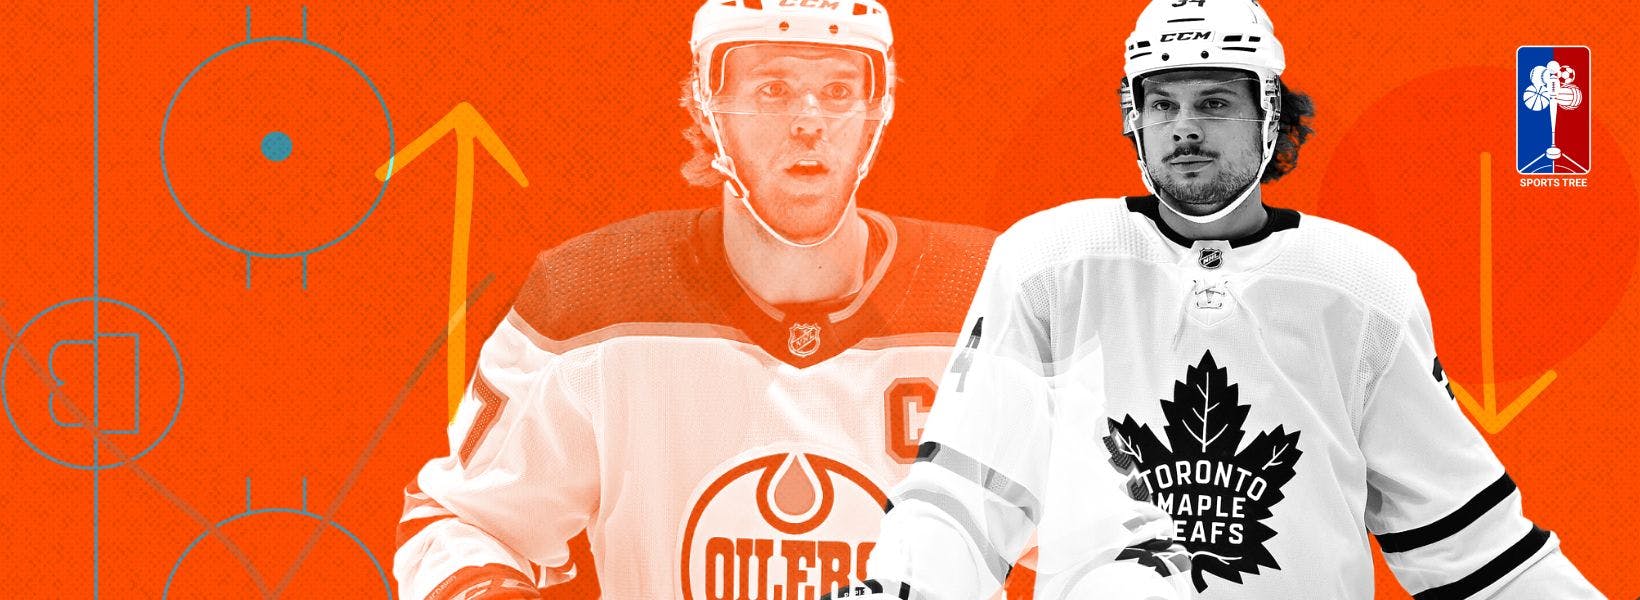 Conner McDavid (Edmonton Oilers) and Auston Matthews (Toronto Maple Leafs)